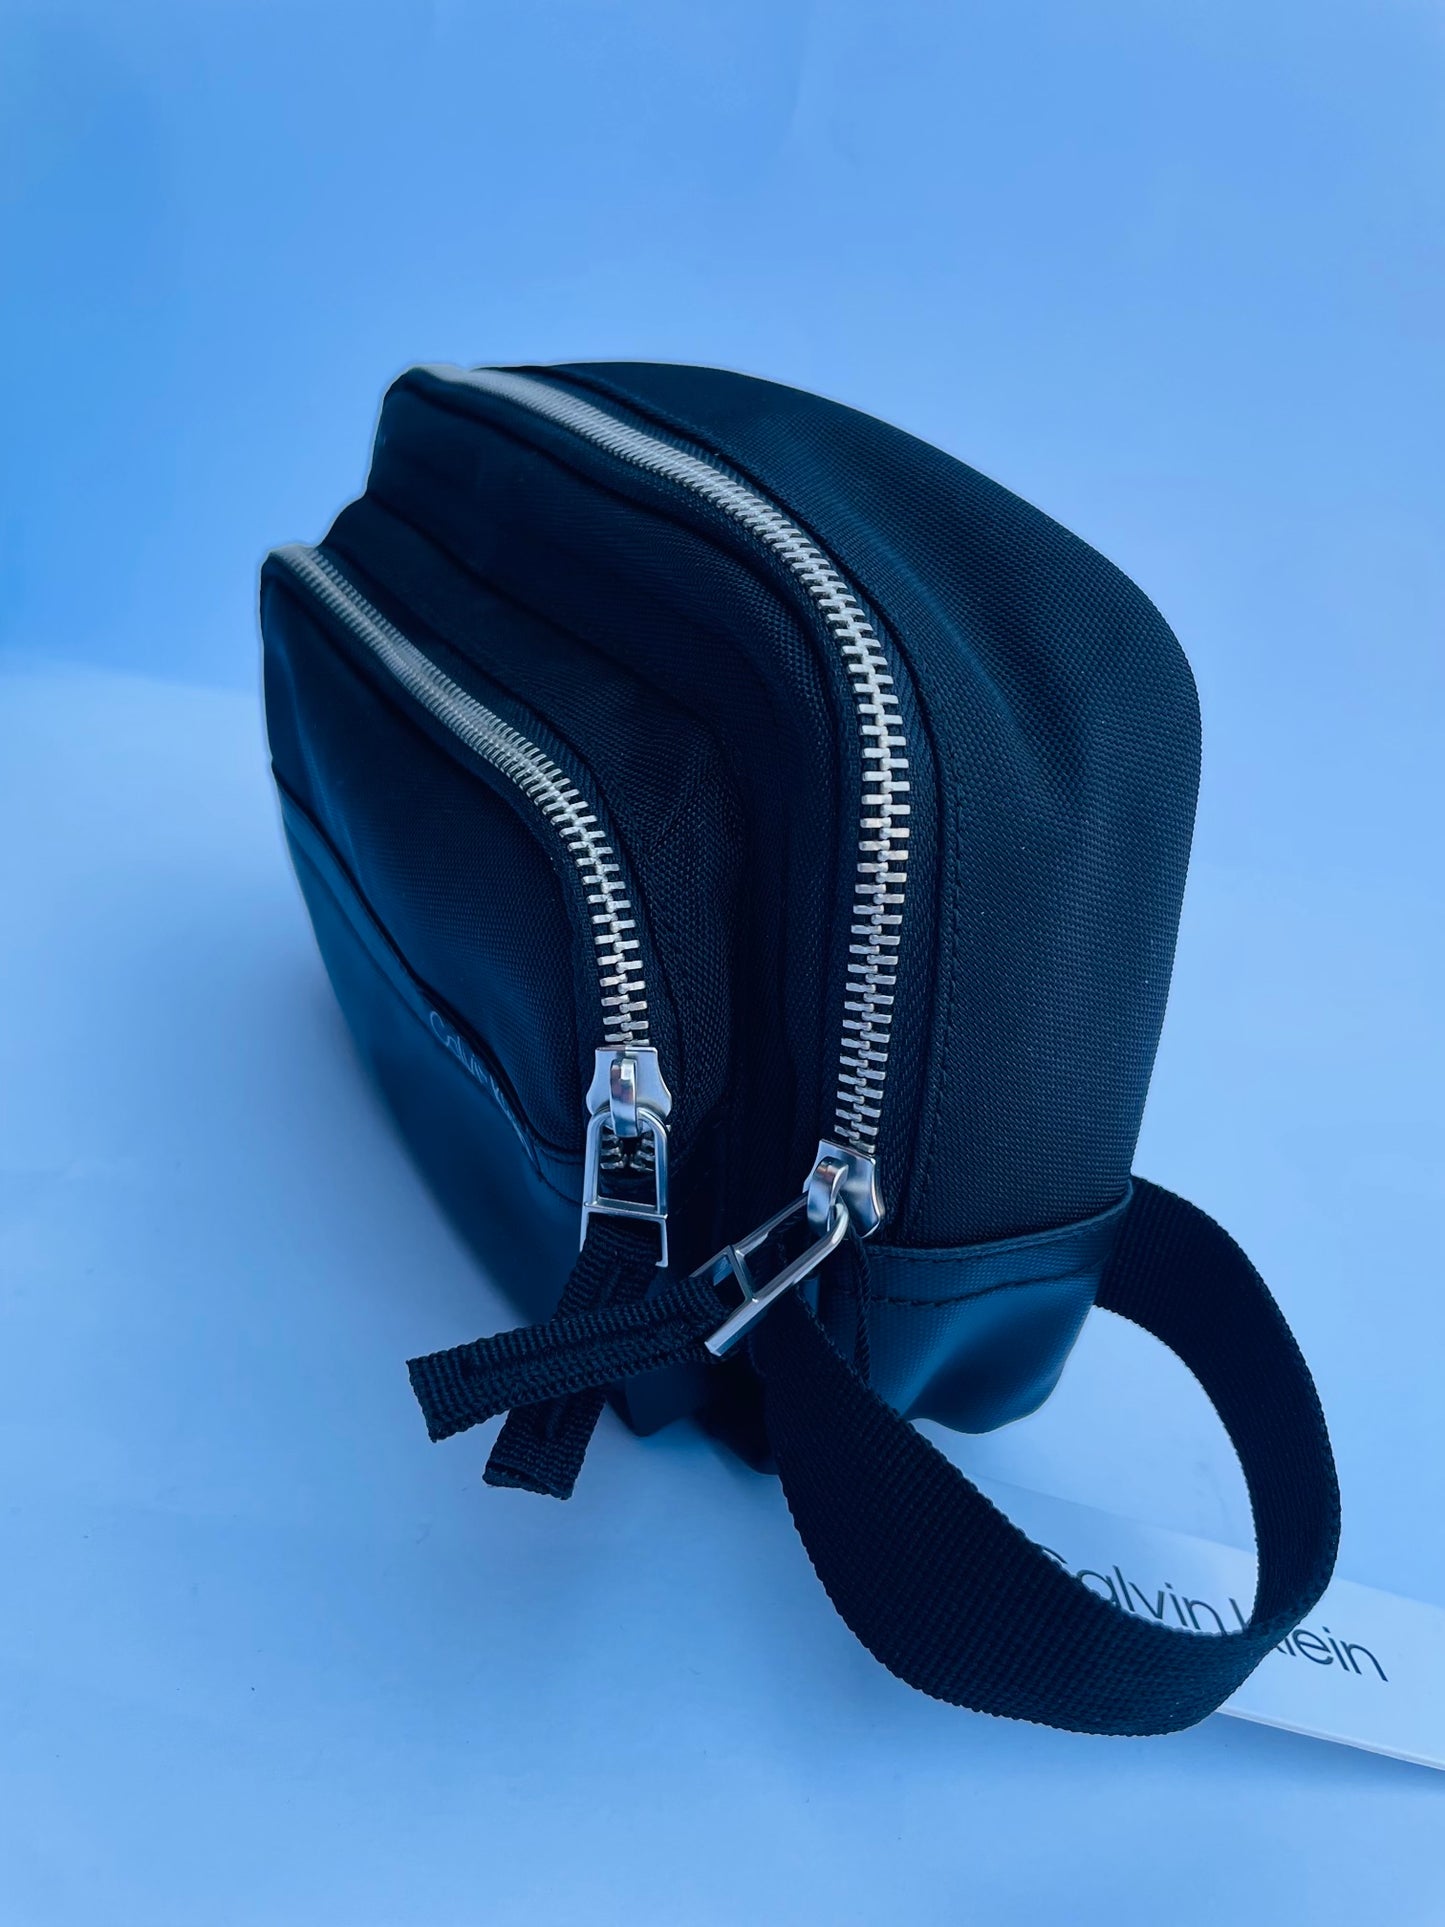 Calvin Klein men’s handbag